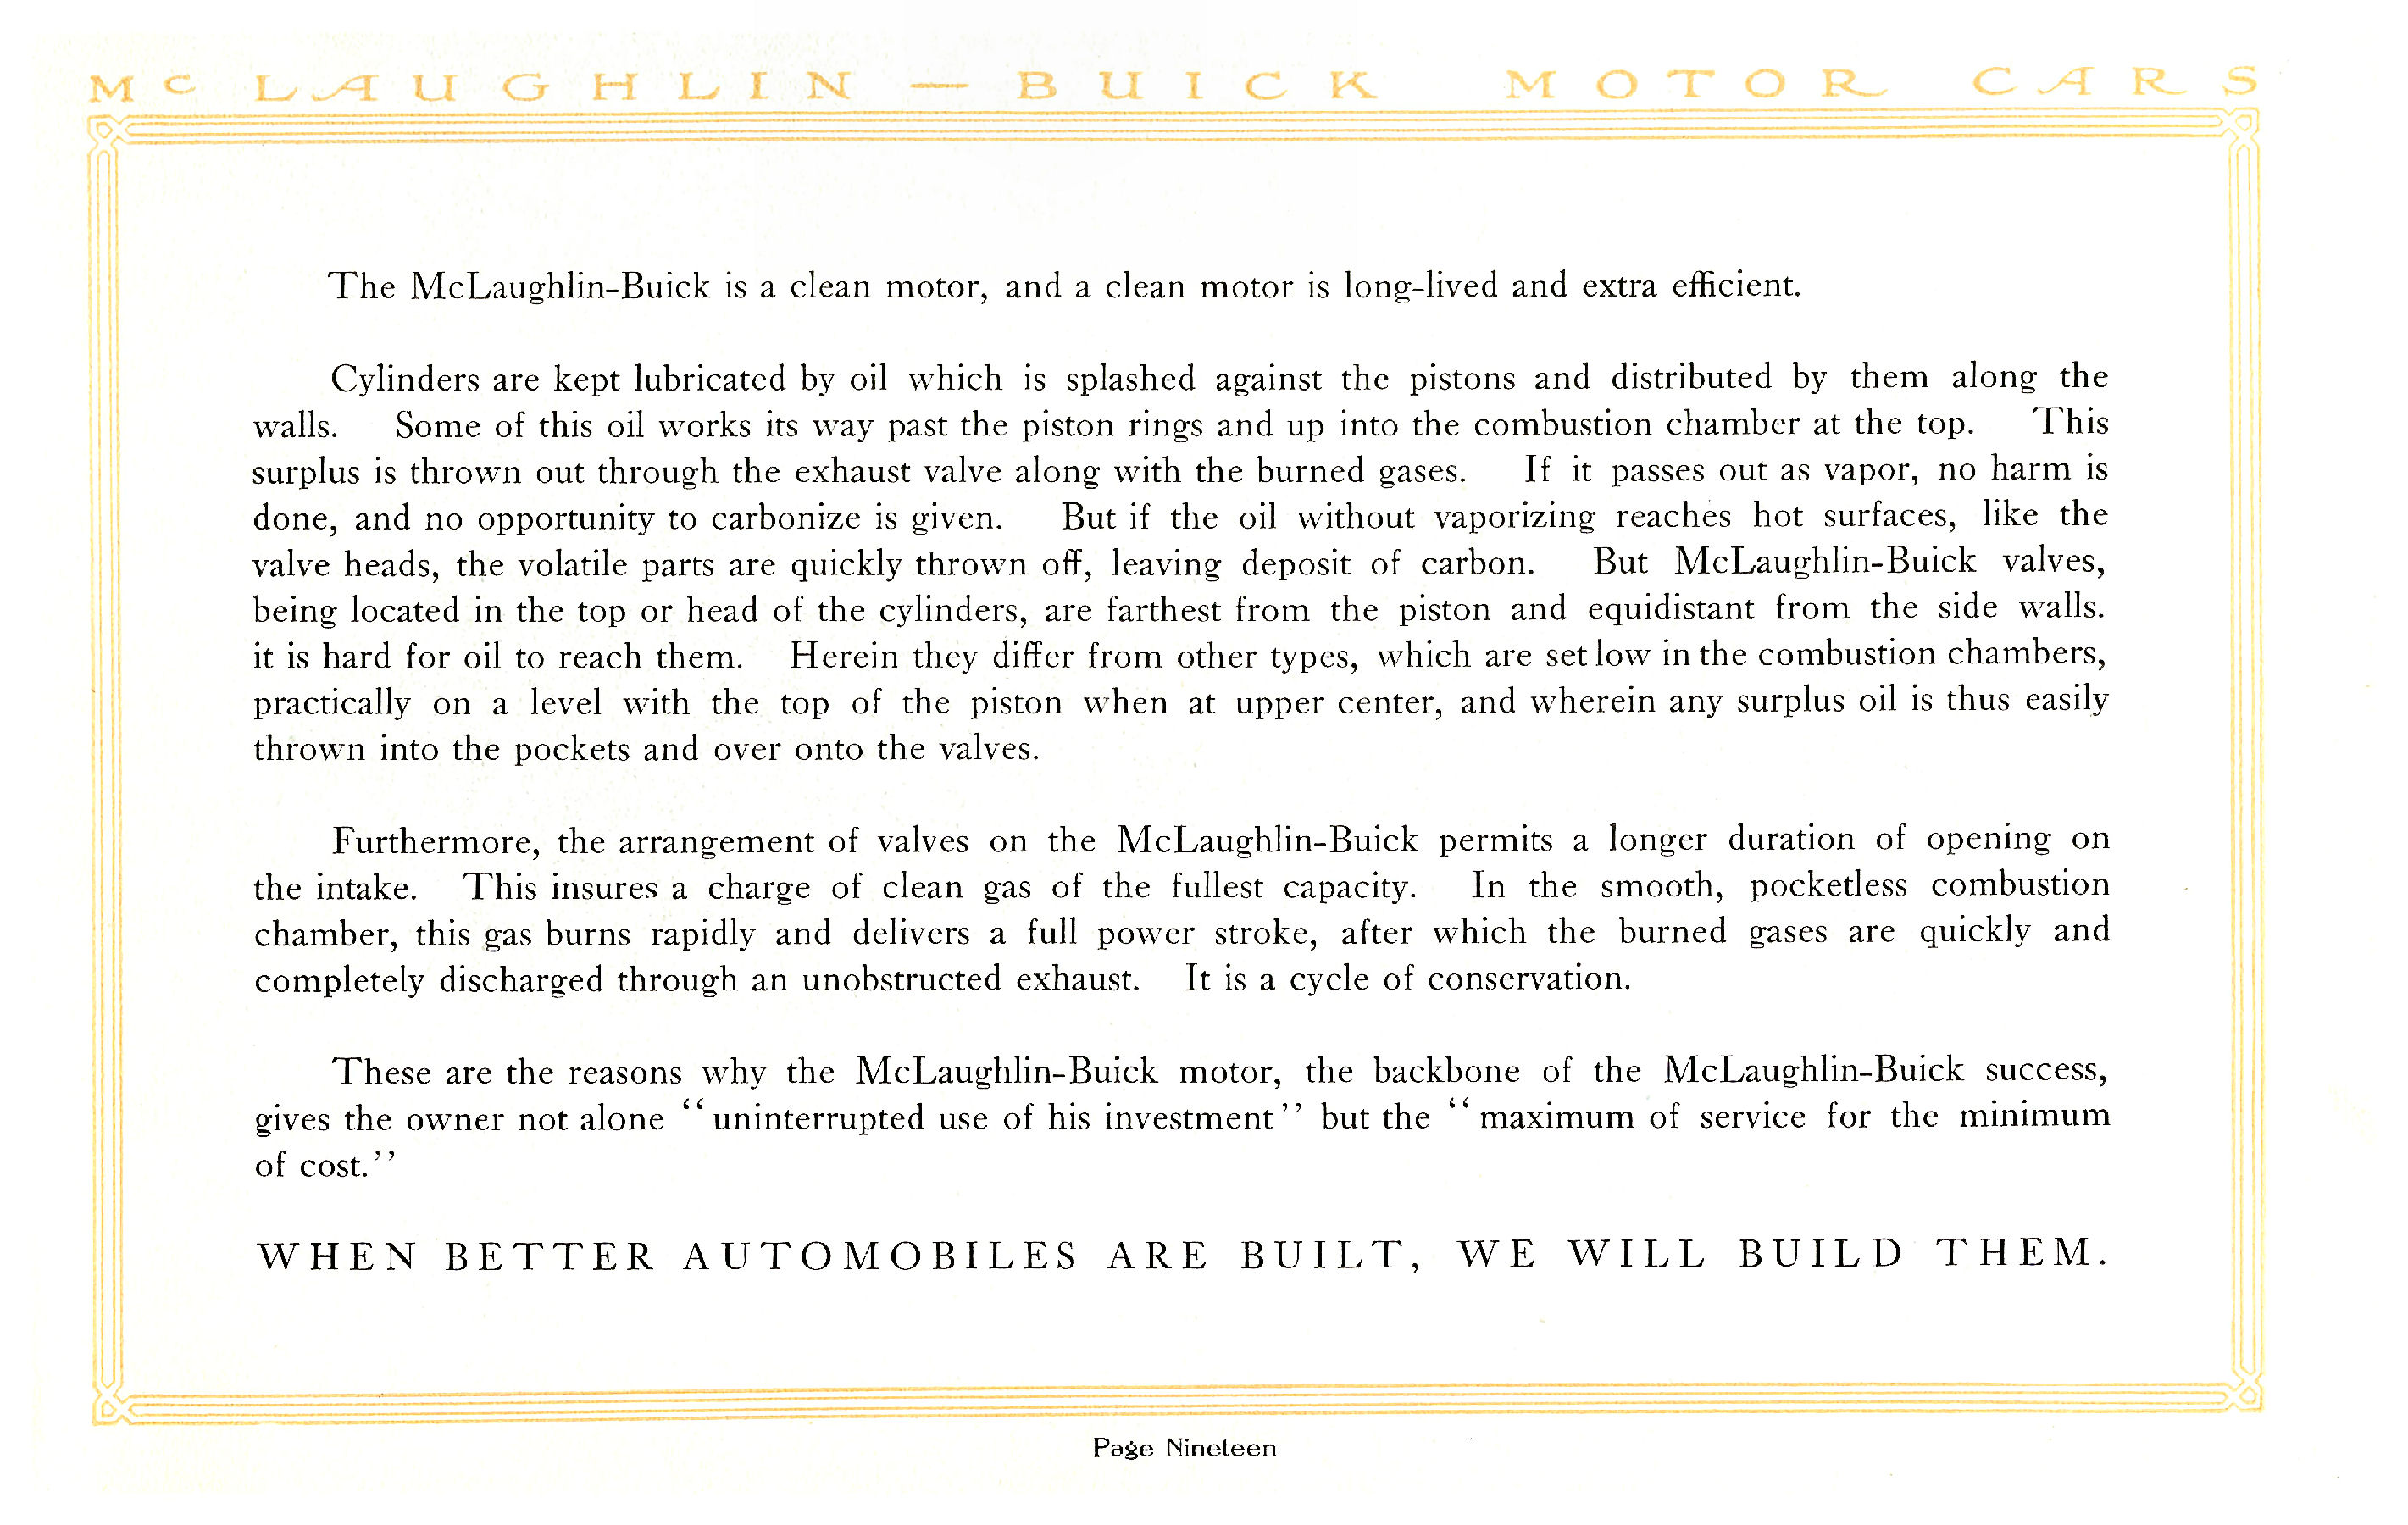 1914 McLaughlin Buick Motor Cars-19